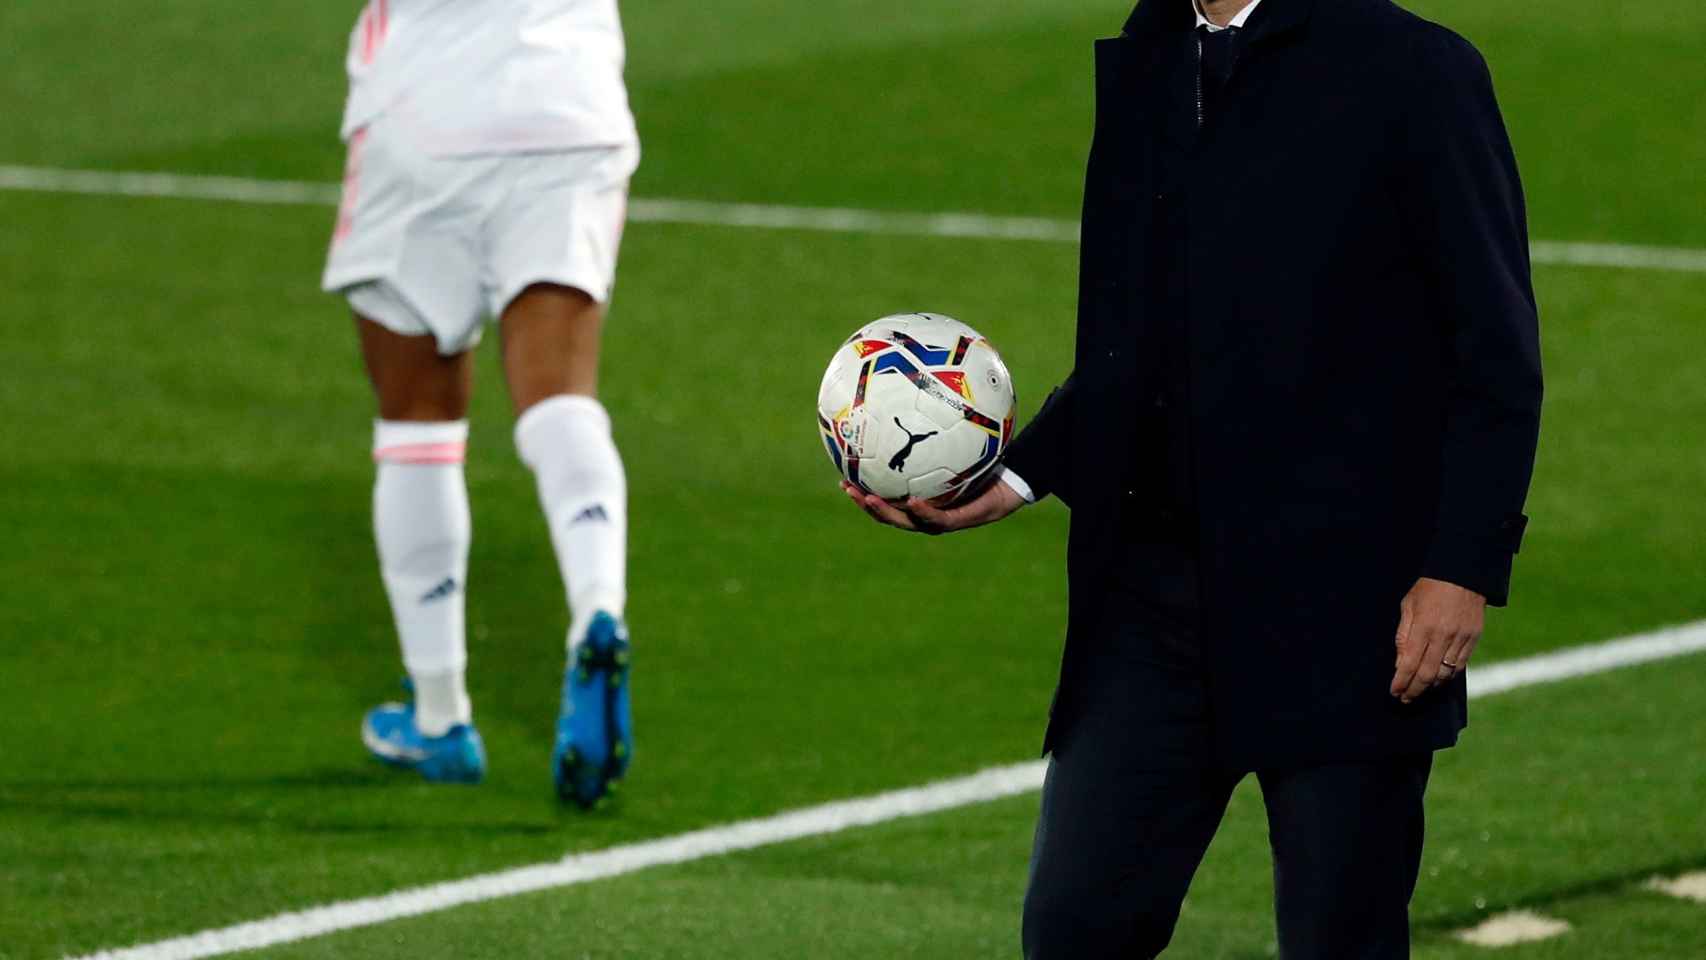 Zinedine Zidane recoge el balón tras haber salido por la banda